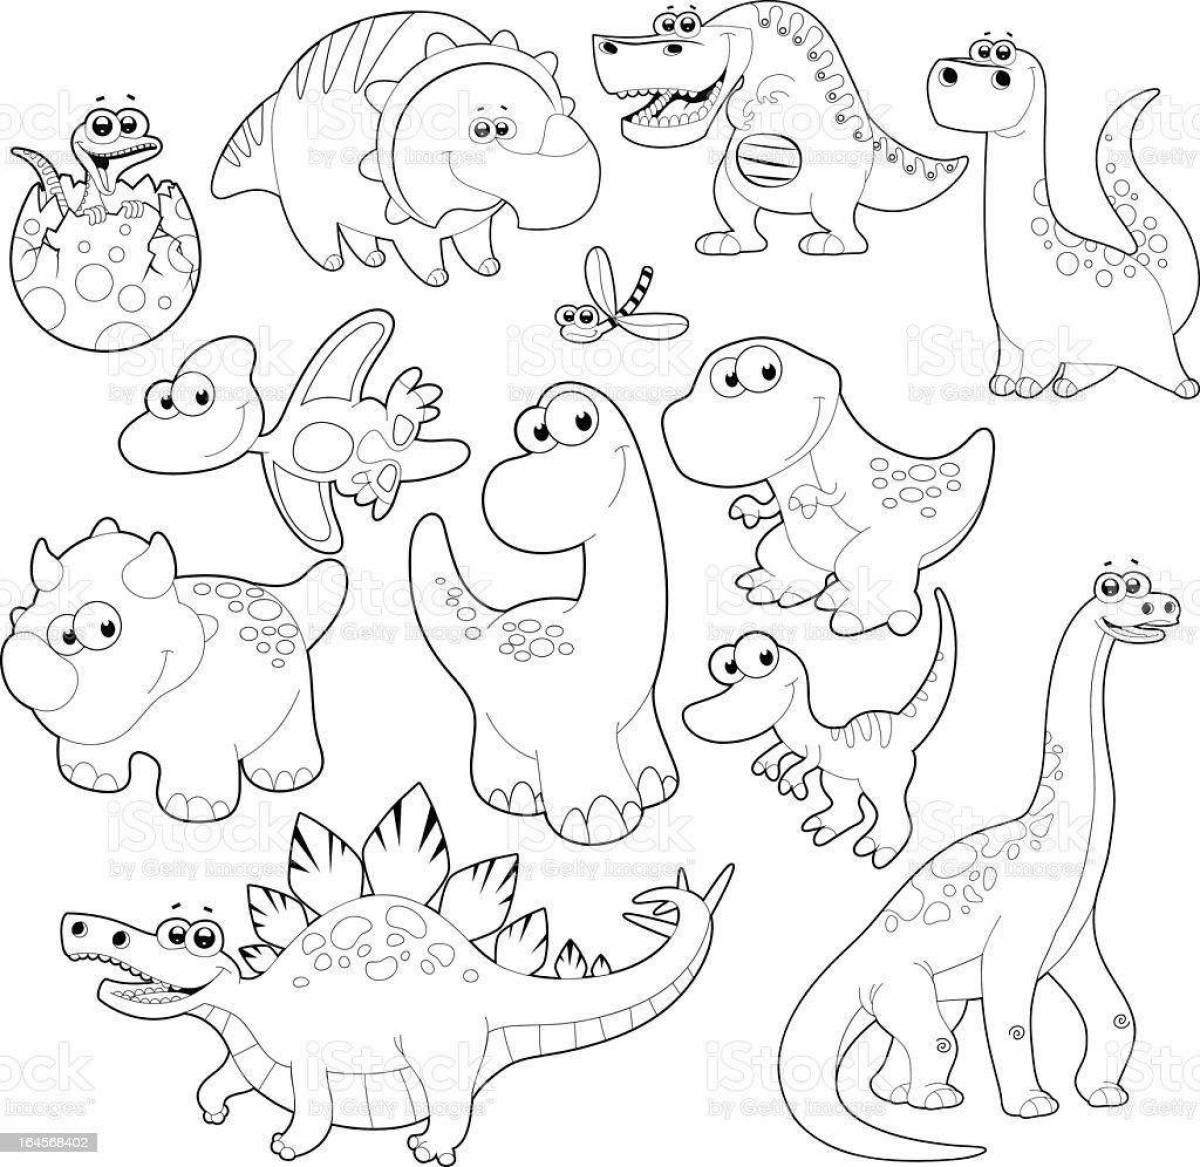 Joyful dinosaur poster